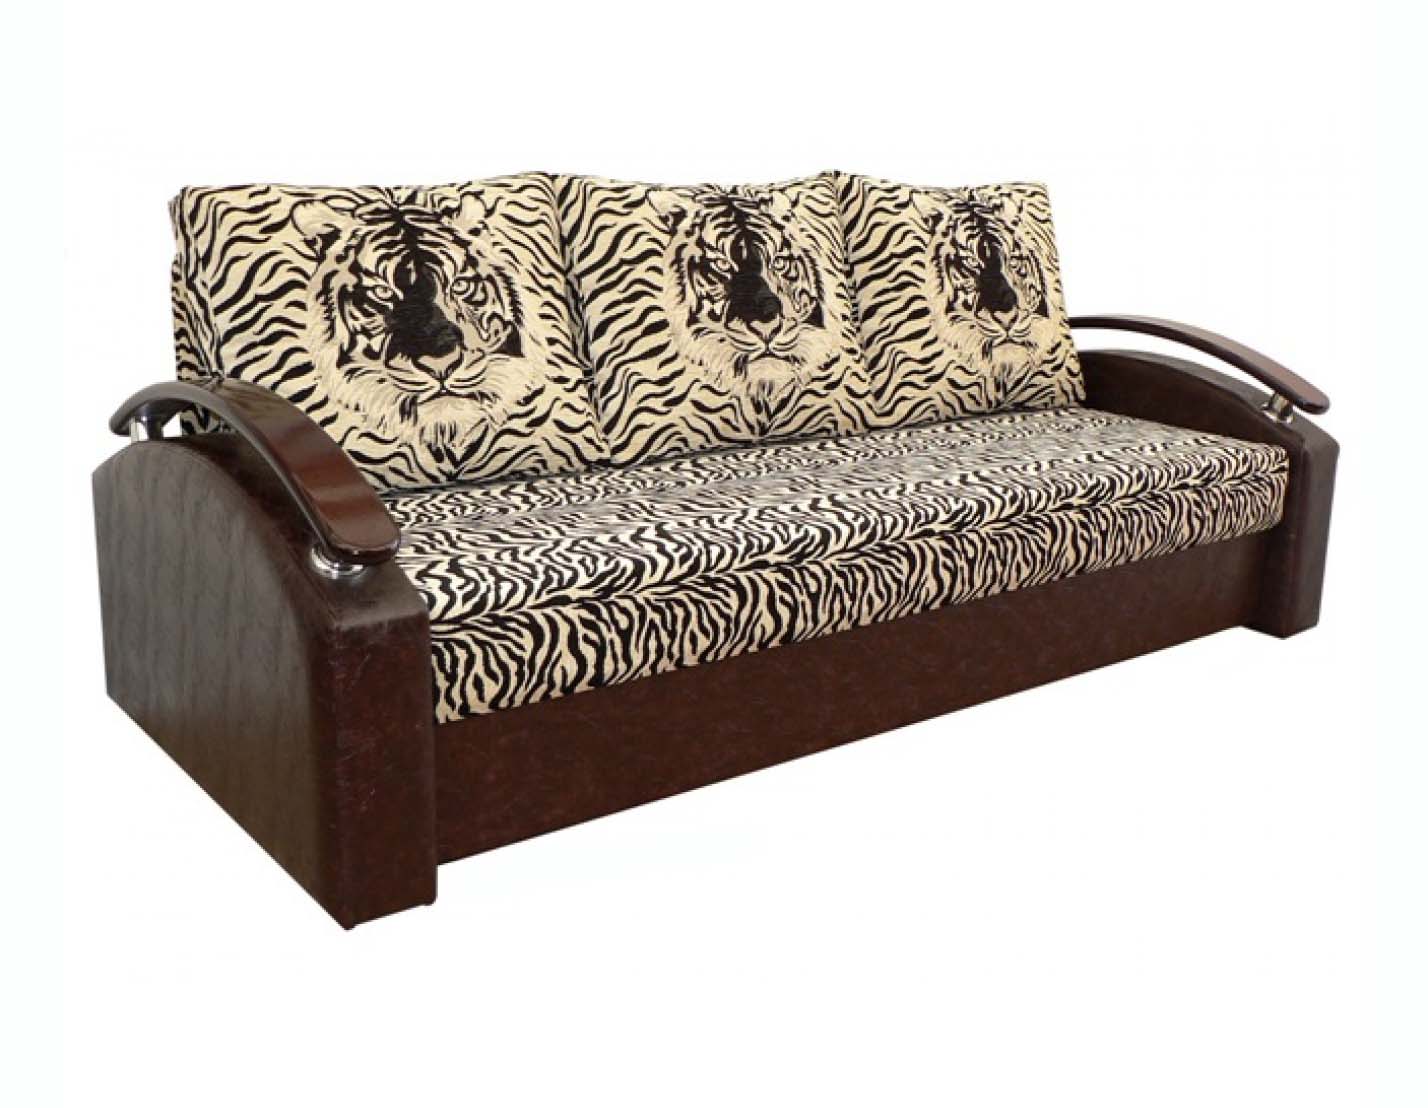 Купить диван в новосибирске недорого от производителя. Диван кровать Финист тулинка. Дешевые диваны. Диван еврокнижка. Тахта еврокнижка.